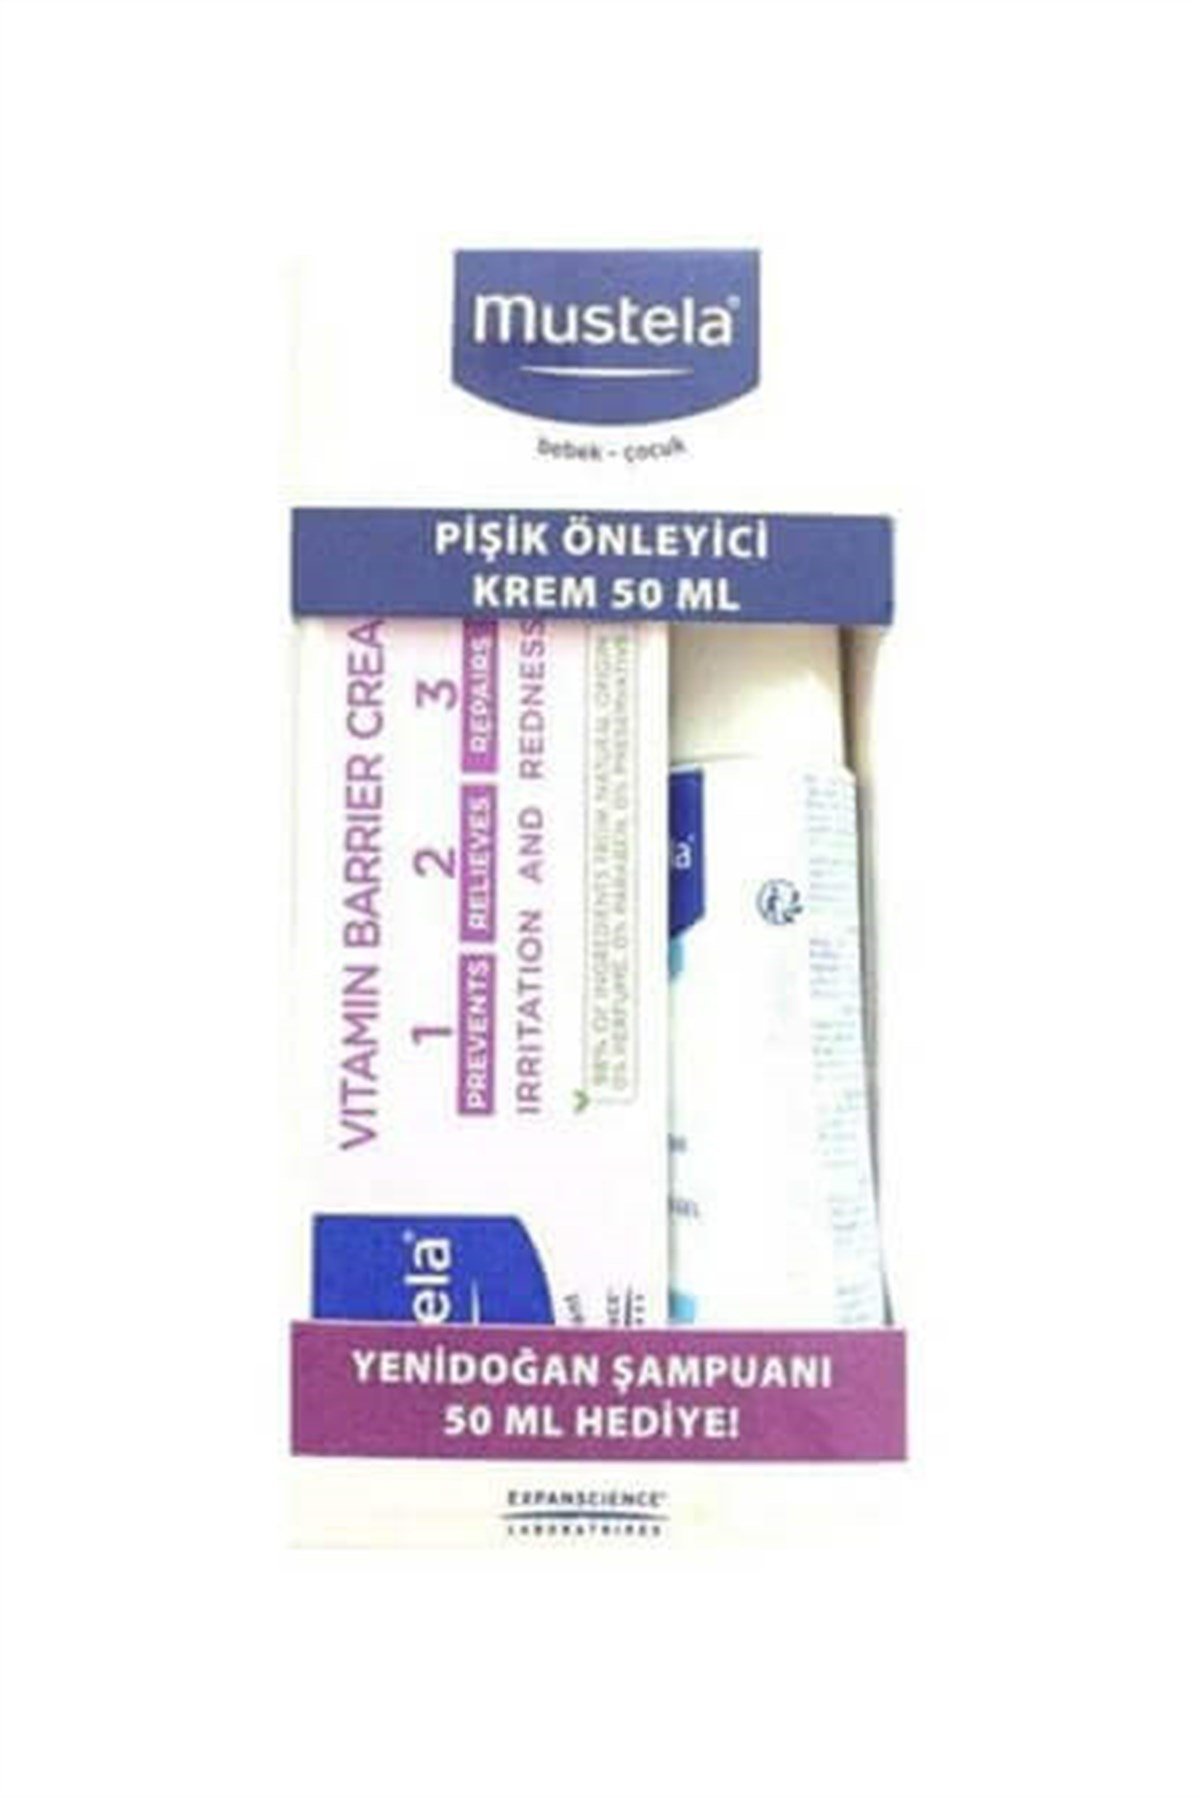 Mustela Vitamin Barrier Pişik Kremi 1.2.3 50ml Yenidoğan Şampuan Hediye  50ml Fiyatları | Dermosiparis.com